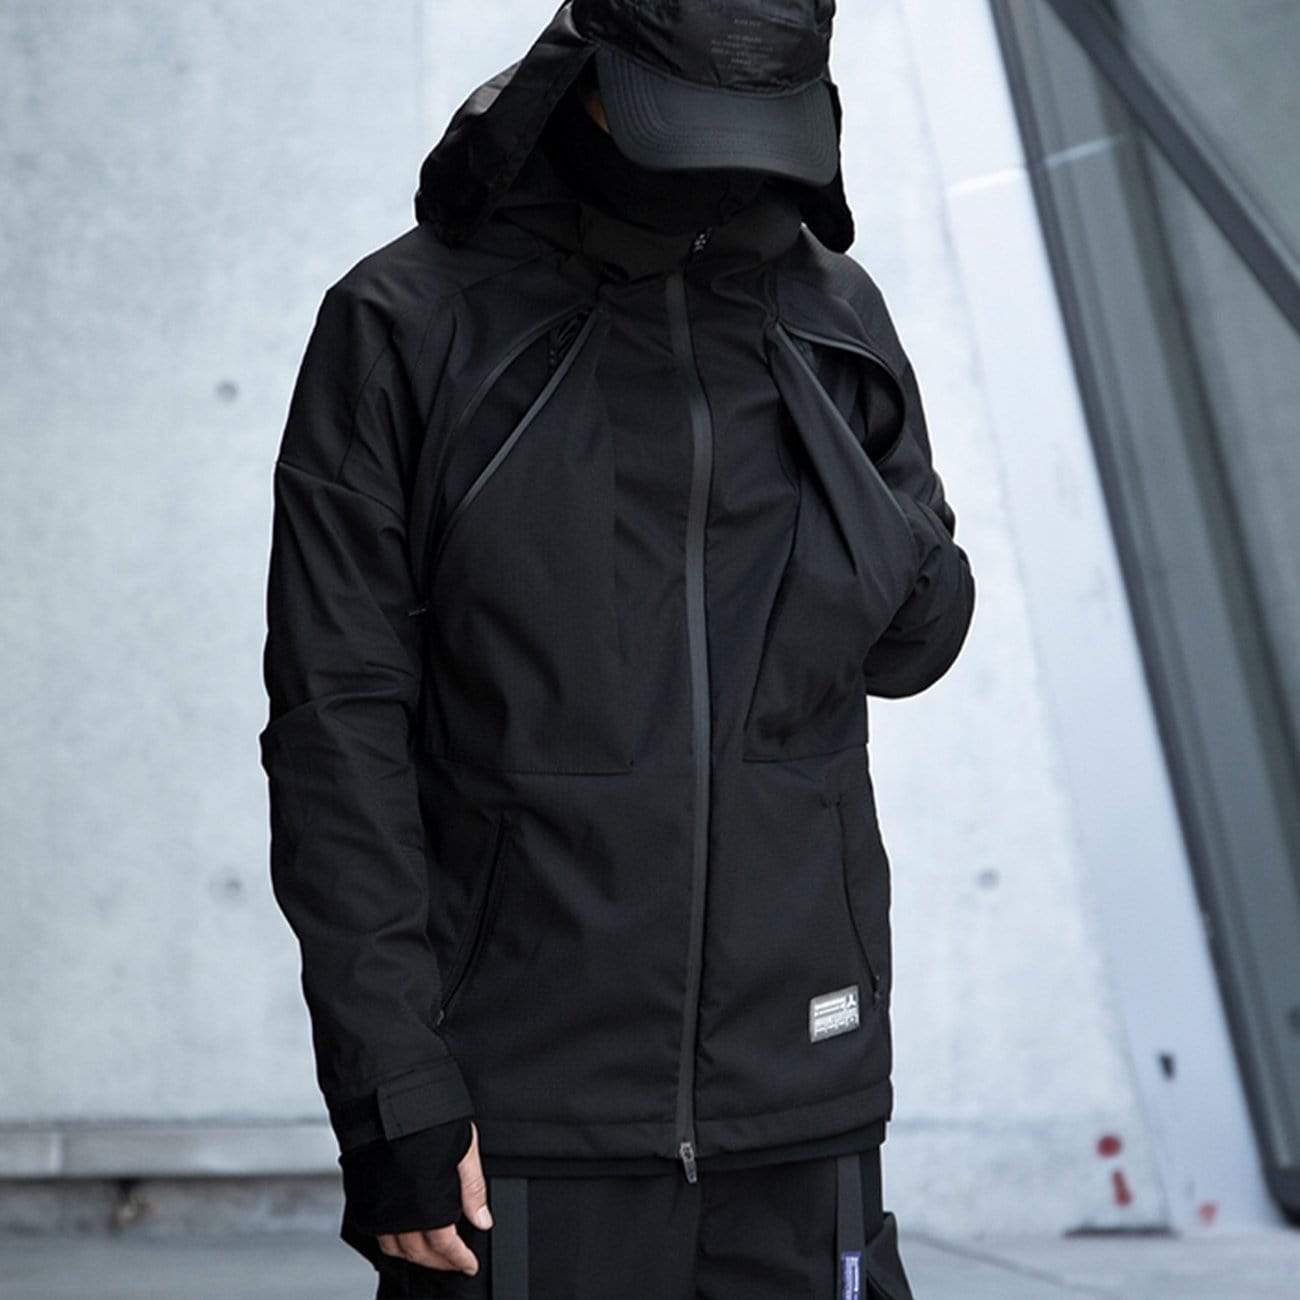 WLS Cyberpunk Waterproof Hooded Jacket